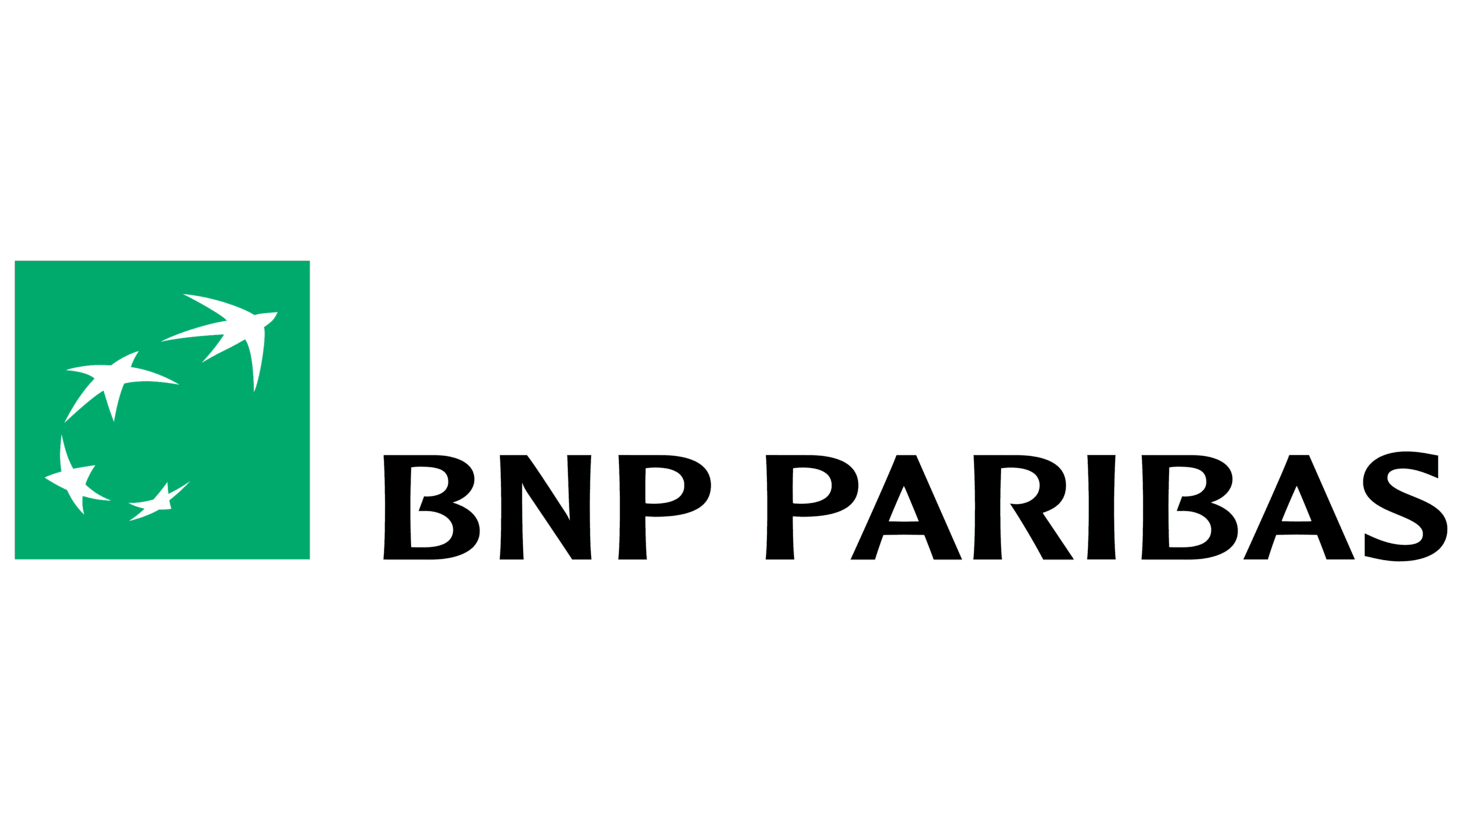 Bnp paribas sign 2007 2009